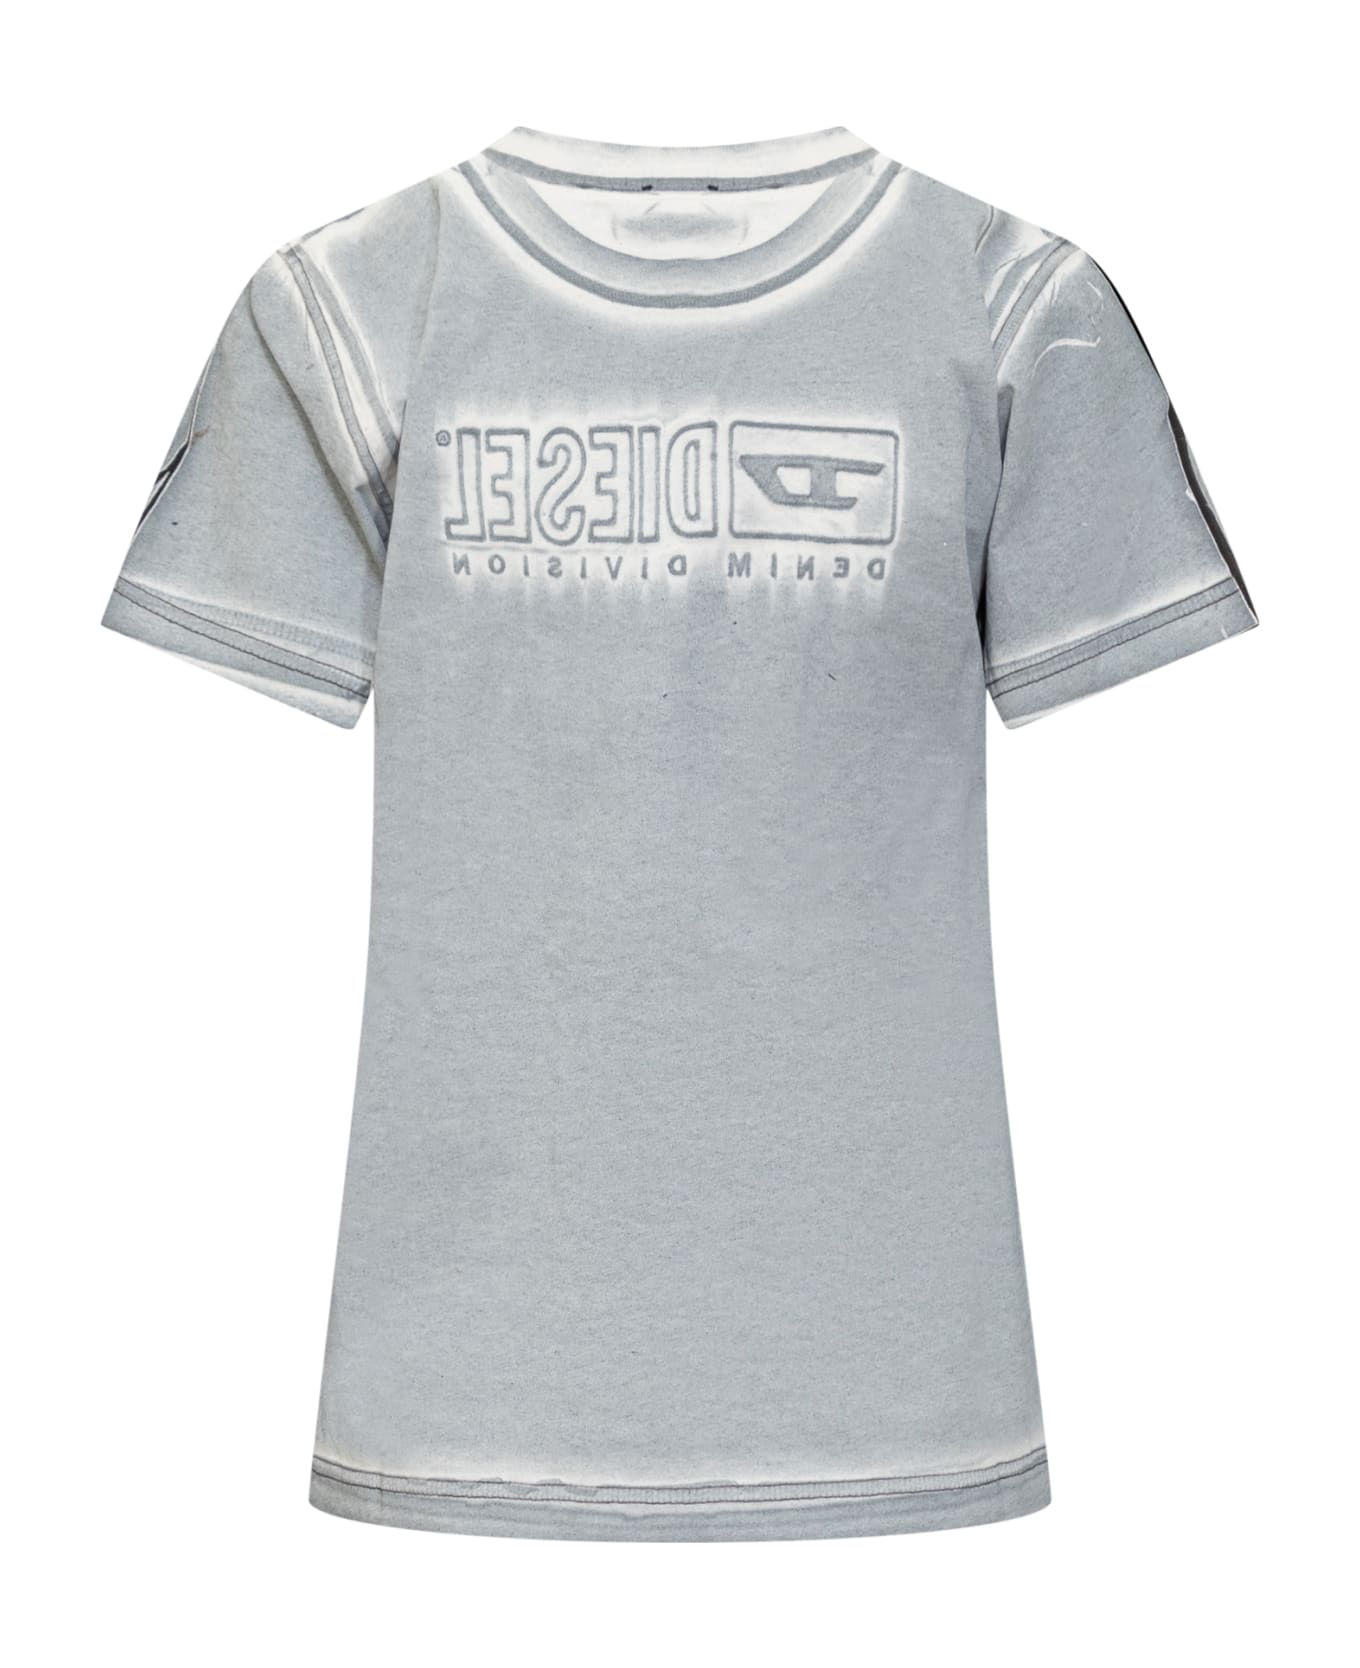 Diesel T-regsn5 T-shirt - AZZURRO Tシャツ